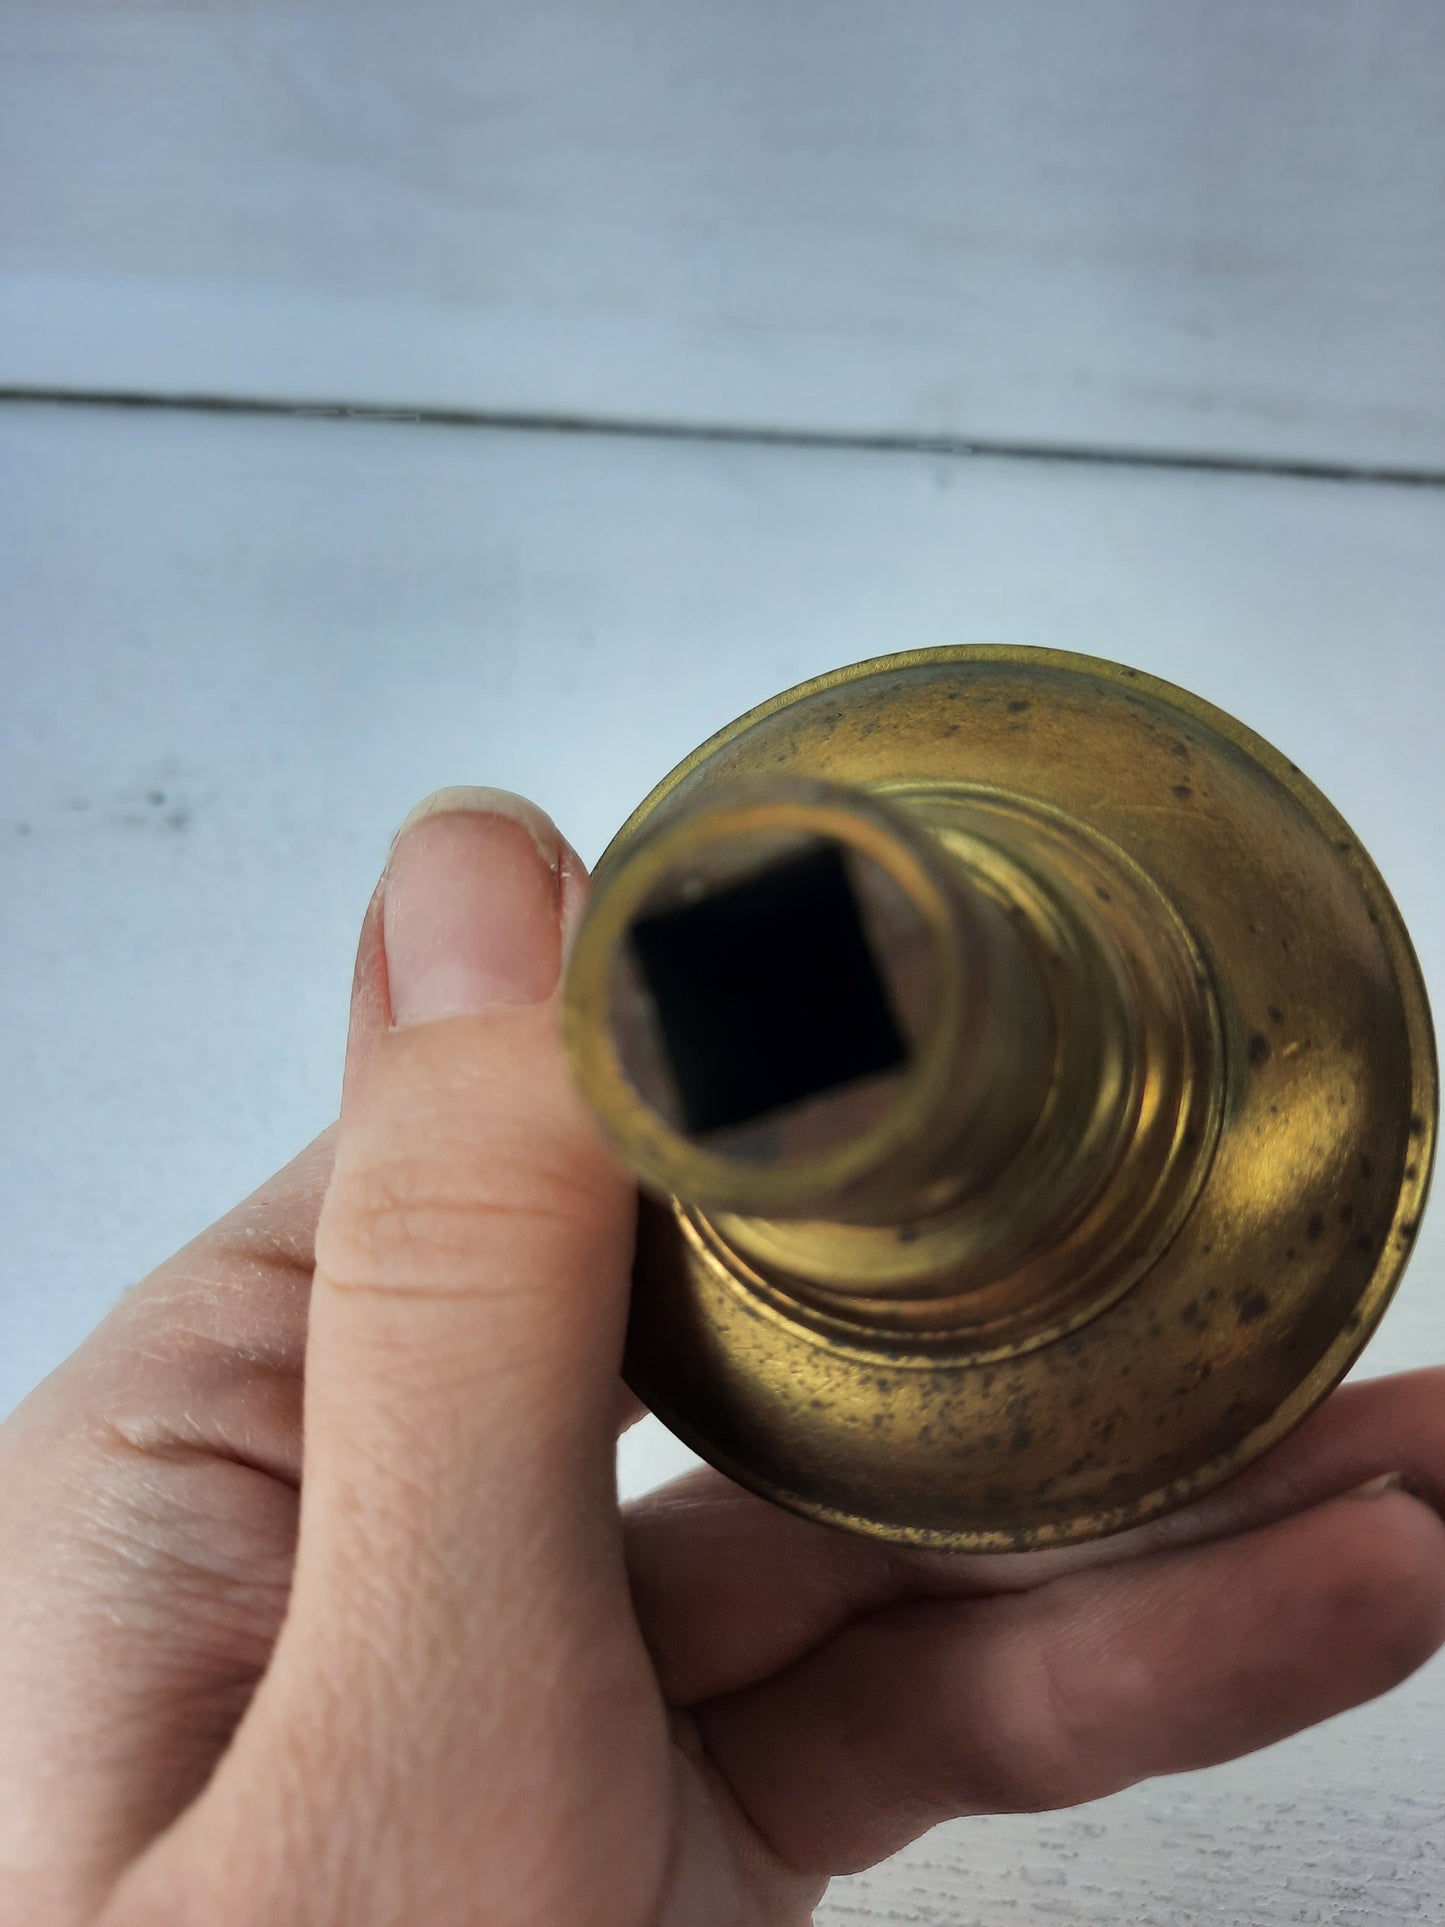 Croatia Design Doorknob by Corbin, Early 1900s Fancy Brass Antique Door Knob